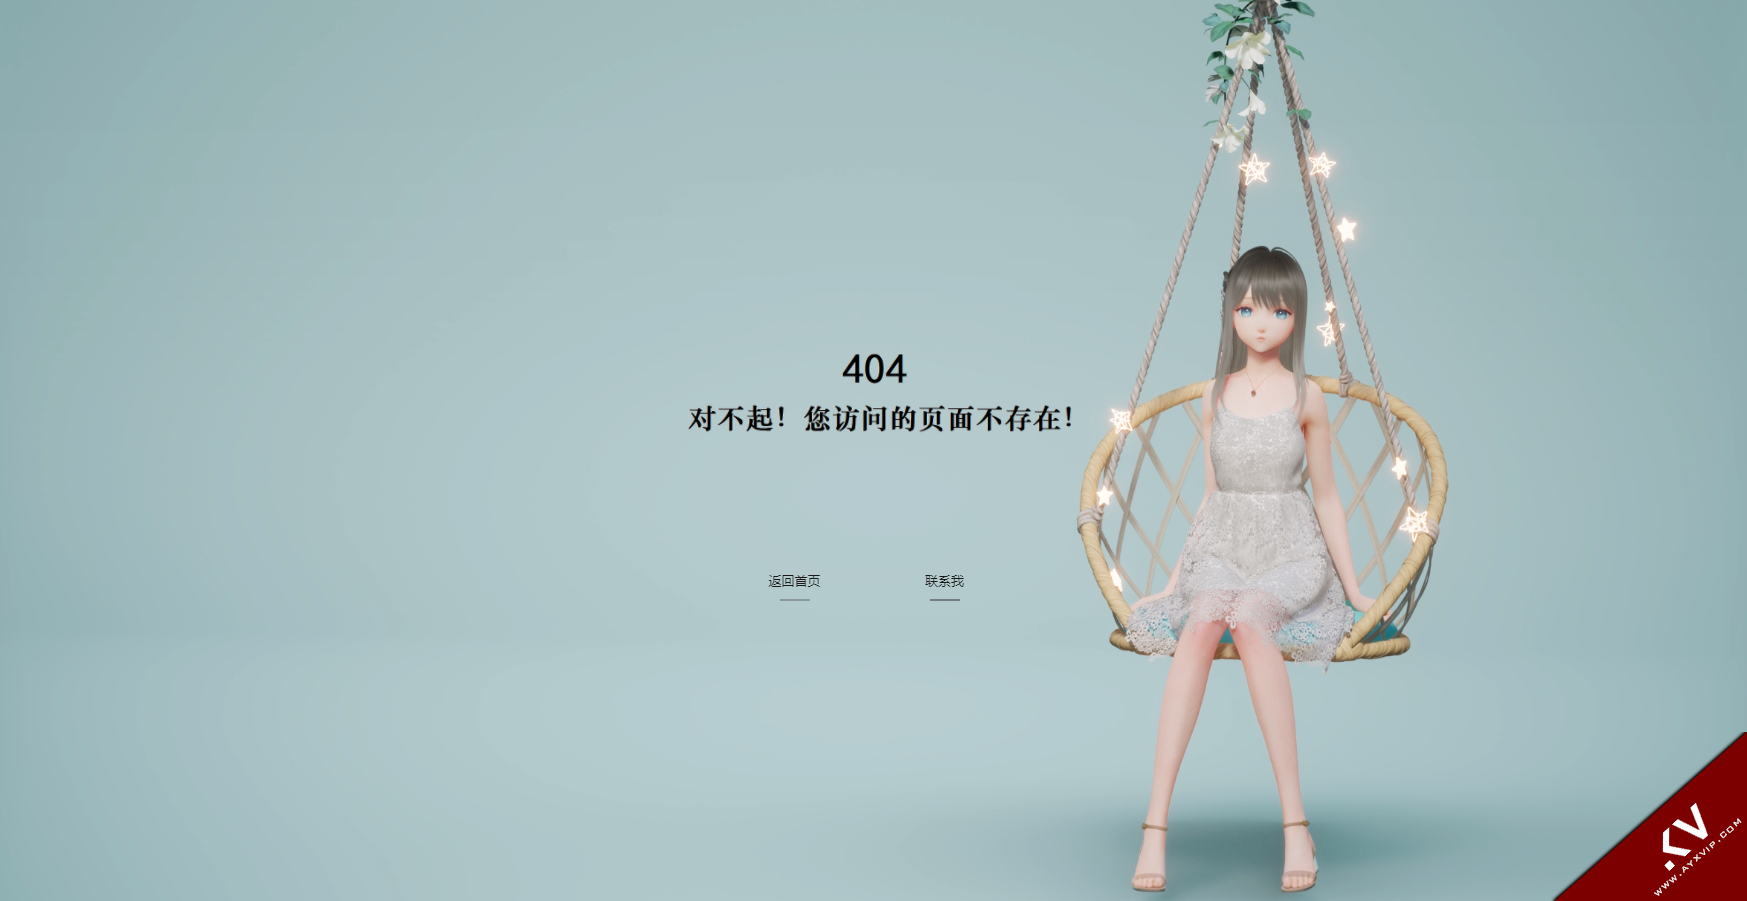 唯美动态个人404单页HTML源码 程序源码 图2张